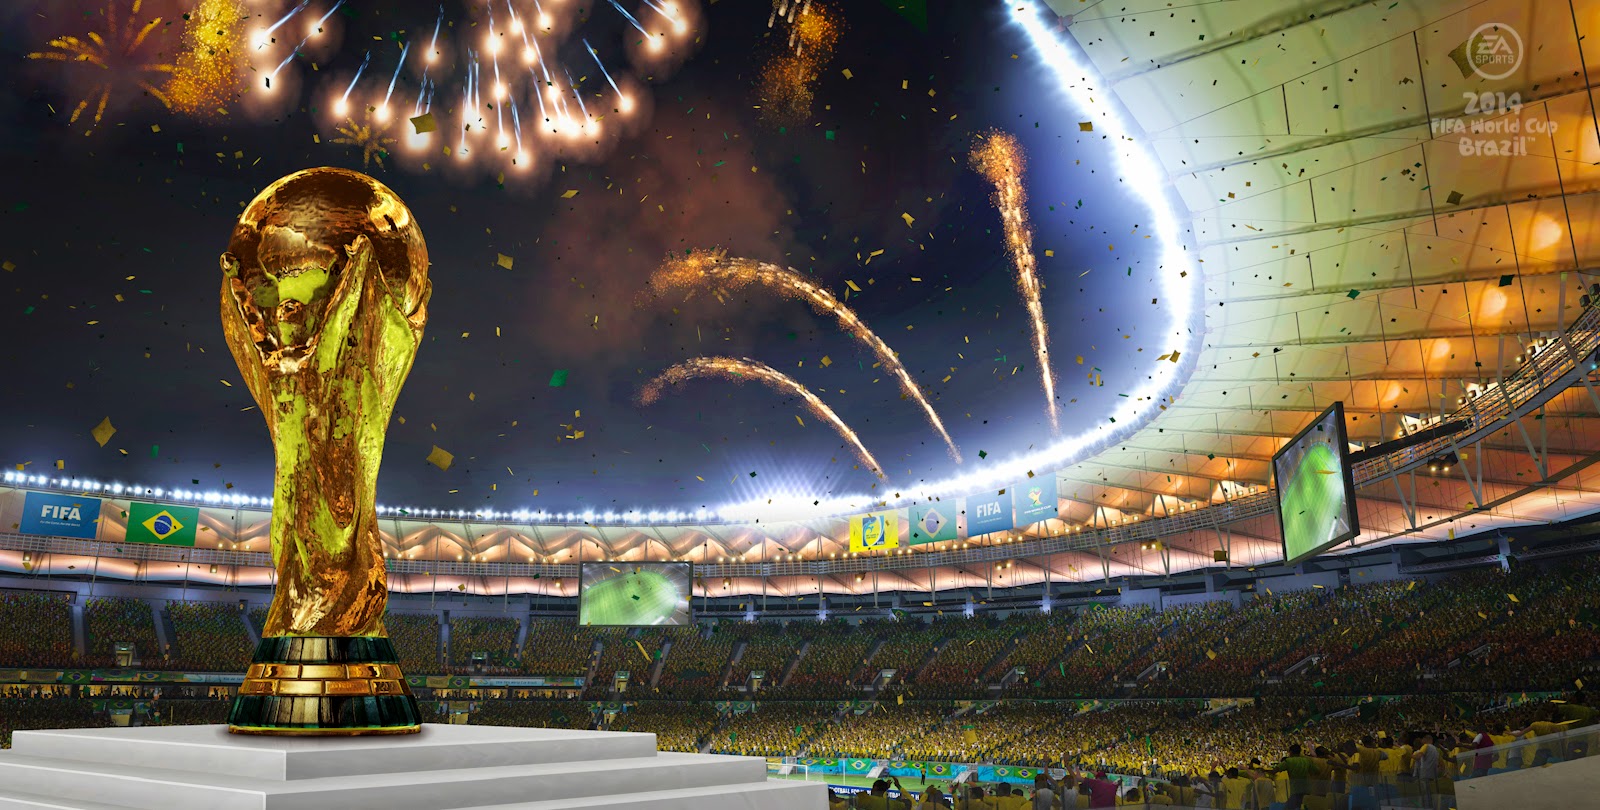 Campeonato Municipal de Futebol de campo de Maracajá inicia domingo com  transmissão ao vivo pelo Portal Agora! e Agora Esportes - Portal Agora